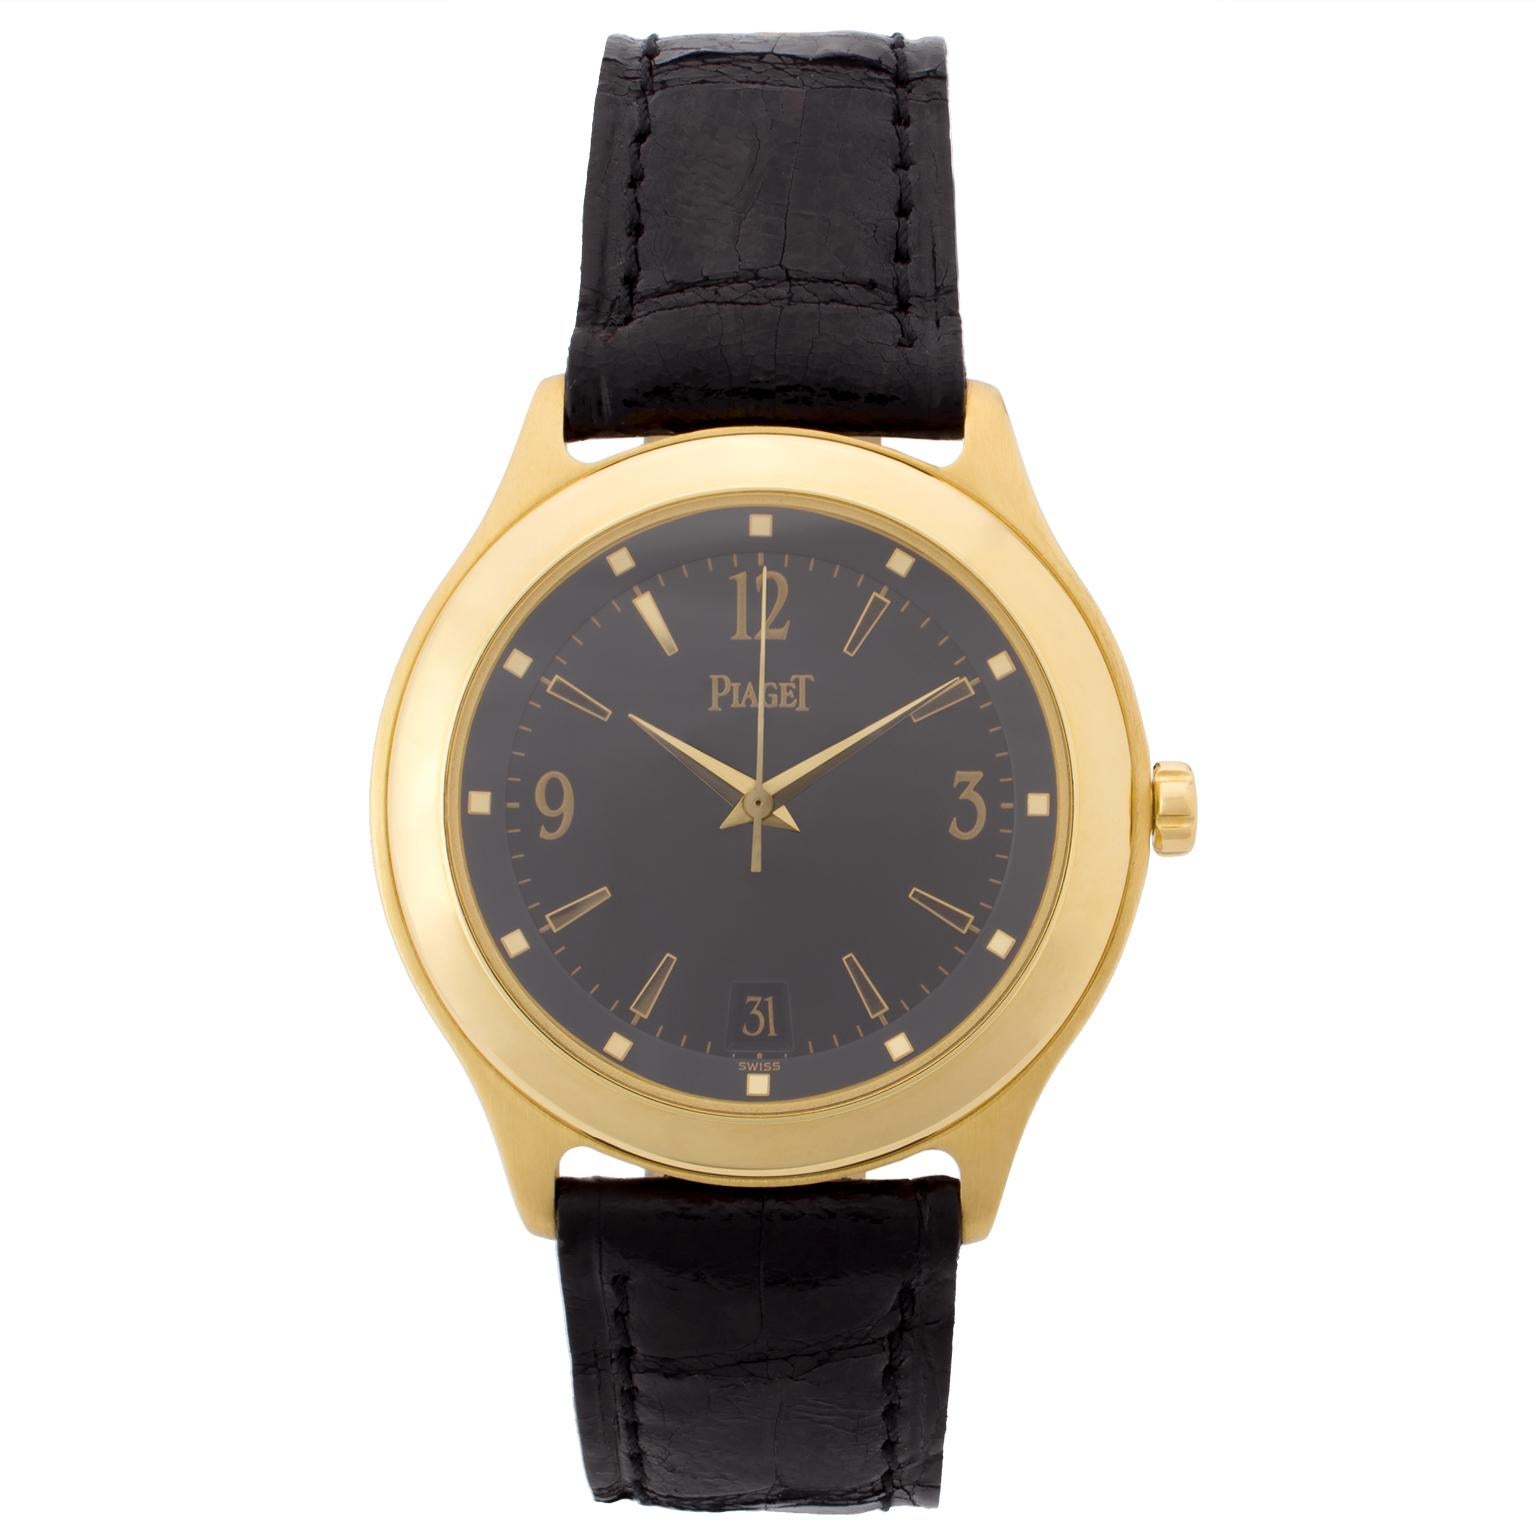 Piaget Citea Automatic Gold Wristwatch